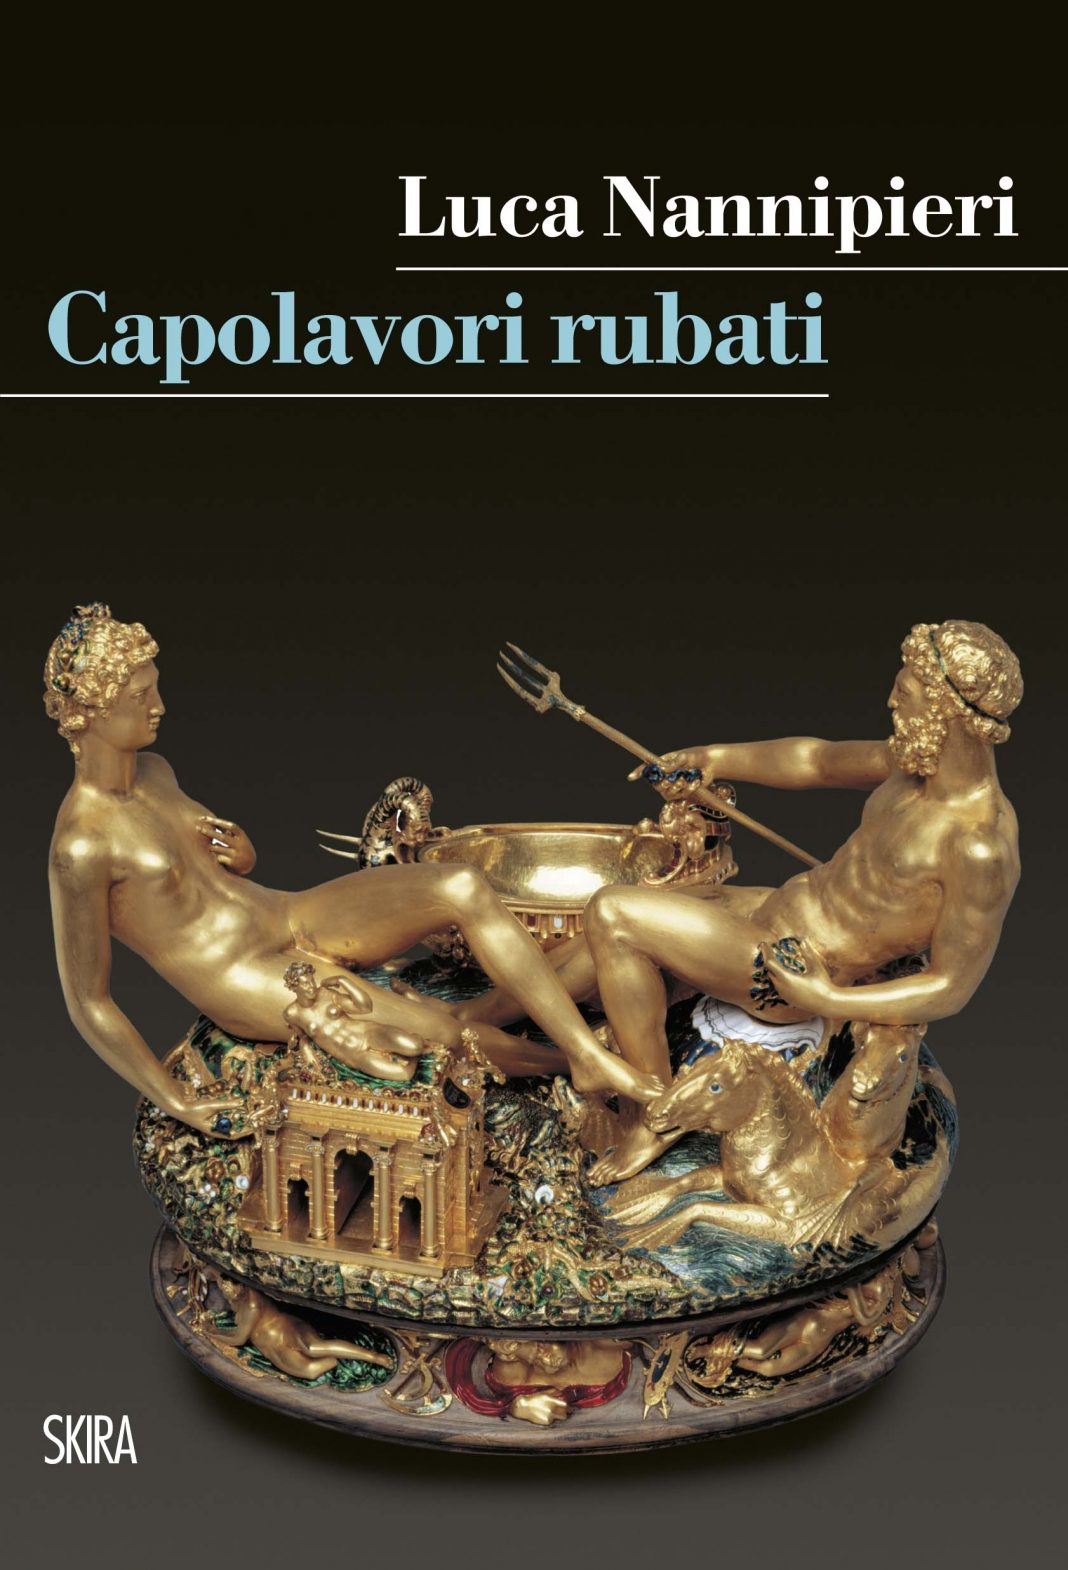 Luca Nannipieri – Capolavori rubati. Presentazione del librohttps://www.exibart.com/repository/media/formidable/11/Capolavori-Rubati-Luca-Nannipieri-SKIRA-1-1068x1570.jpg